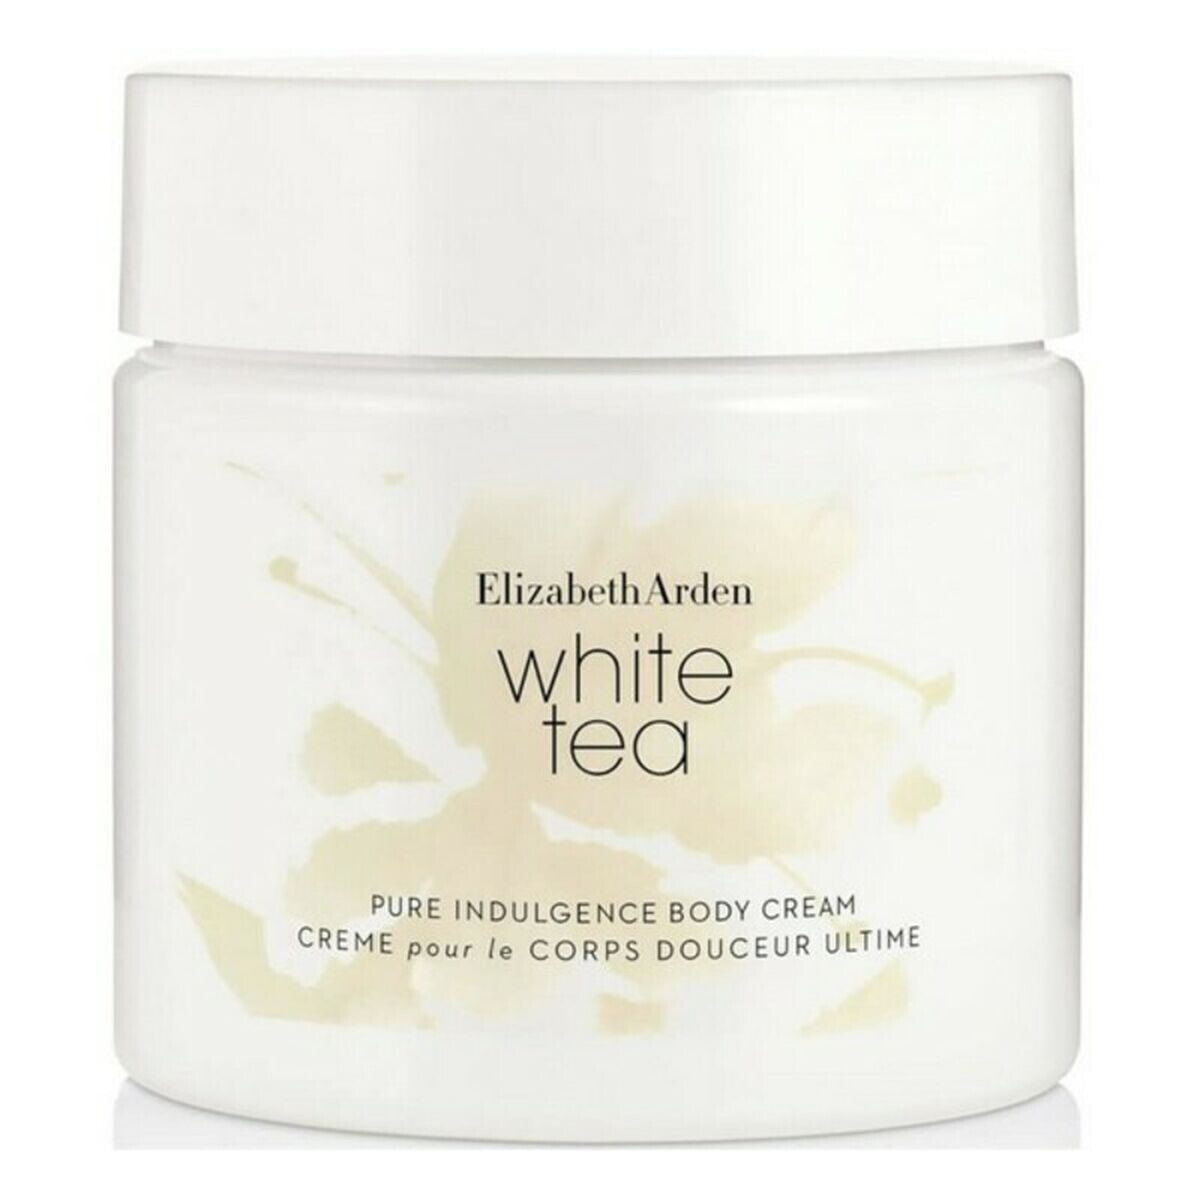 Увлажняющий крем для тела White Tea Elizabeth Arden (400 ml)